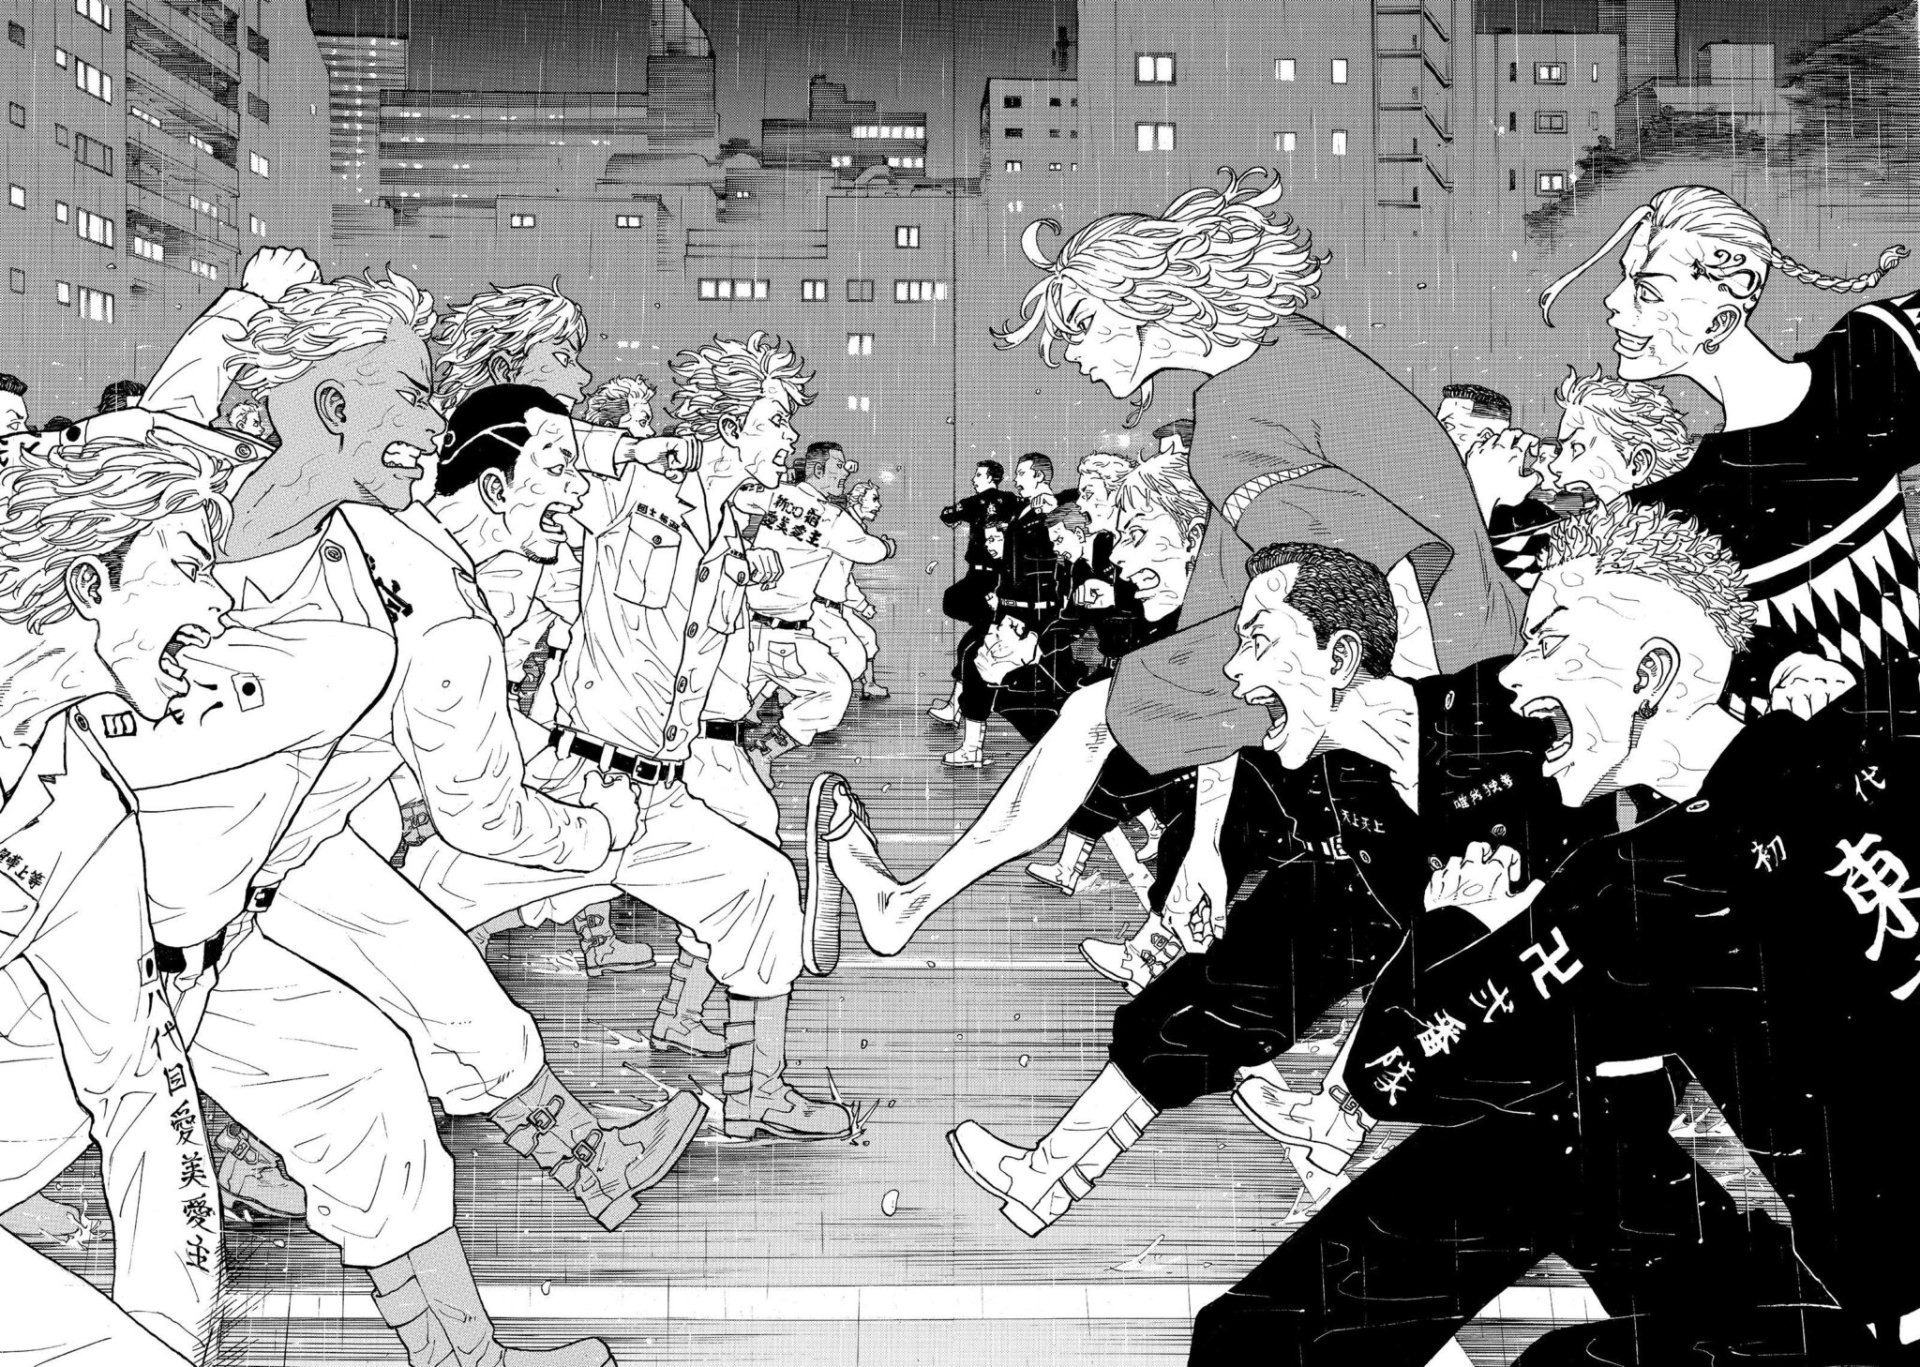 Tải xuống ứng dụng Anime Tokyo Revengers Wallpaper 2024 - Miễn phí - 9Apps